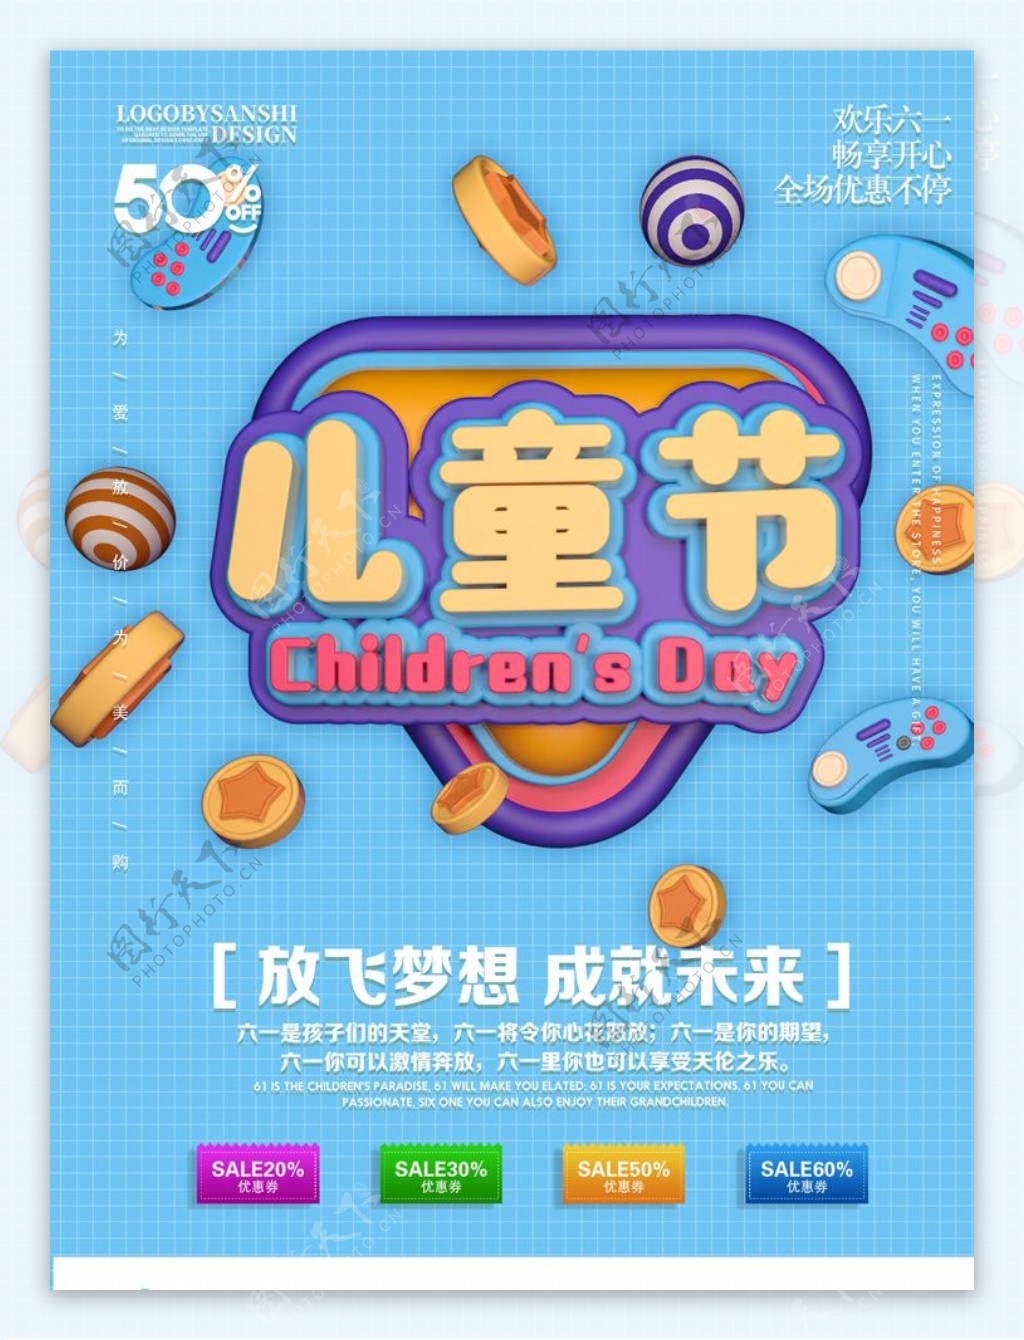 儿童节宣传节日海报